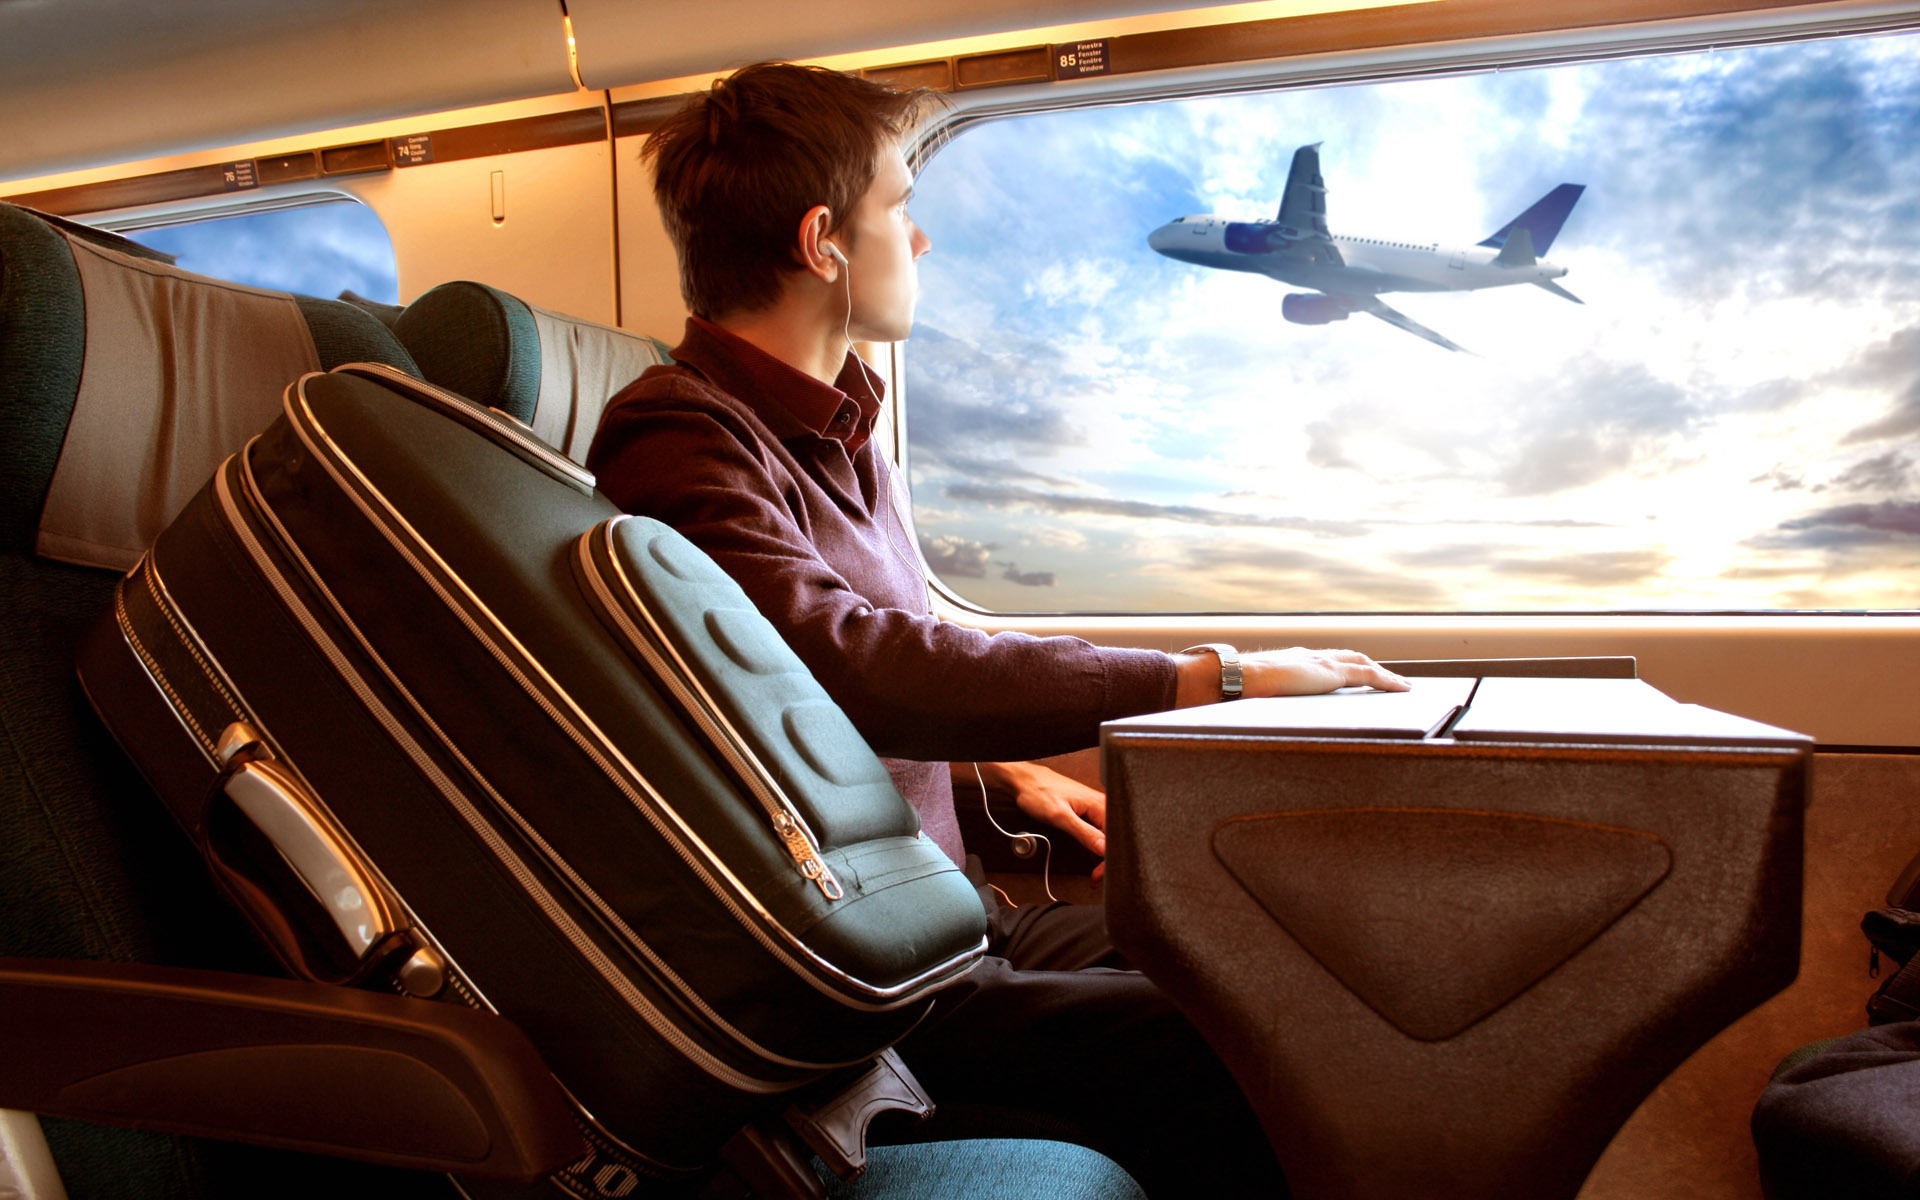 красивый вид из окна иллюминатора - мужчина смотрит в окно во время полета на самолете